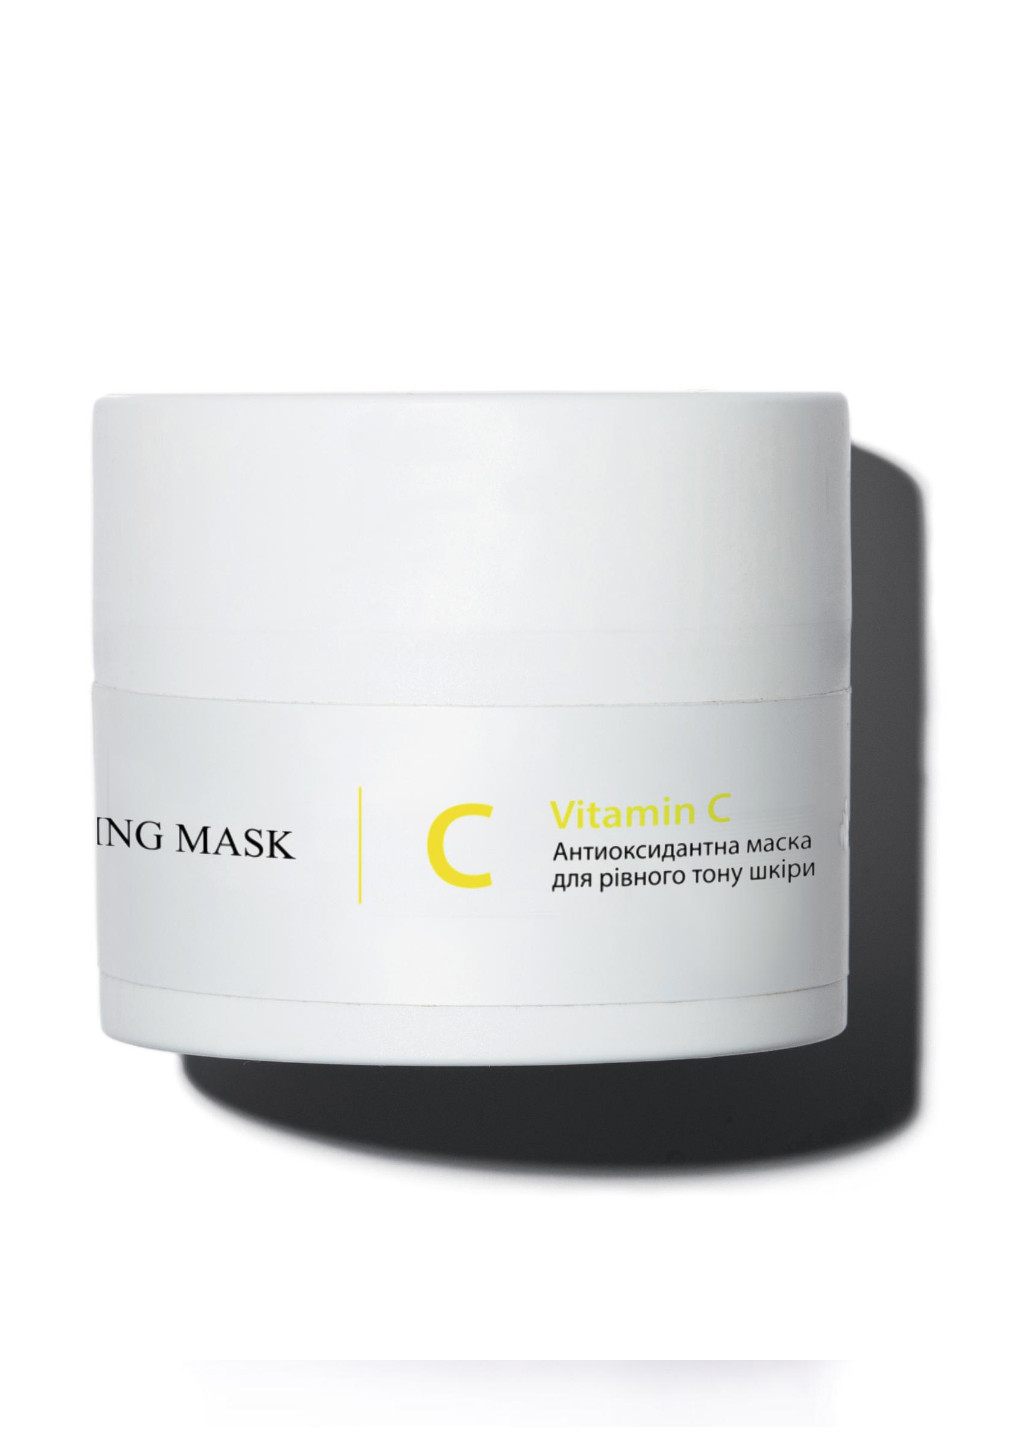 Антиоксидантна маска для рівного тону шкіри з вітаміном С Vitamin C Antioxidant Healthy Brightening Mask, 50 мл Hillary (252649969)